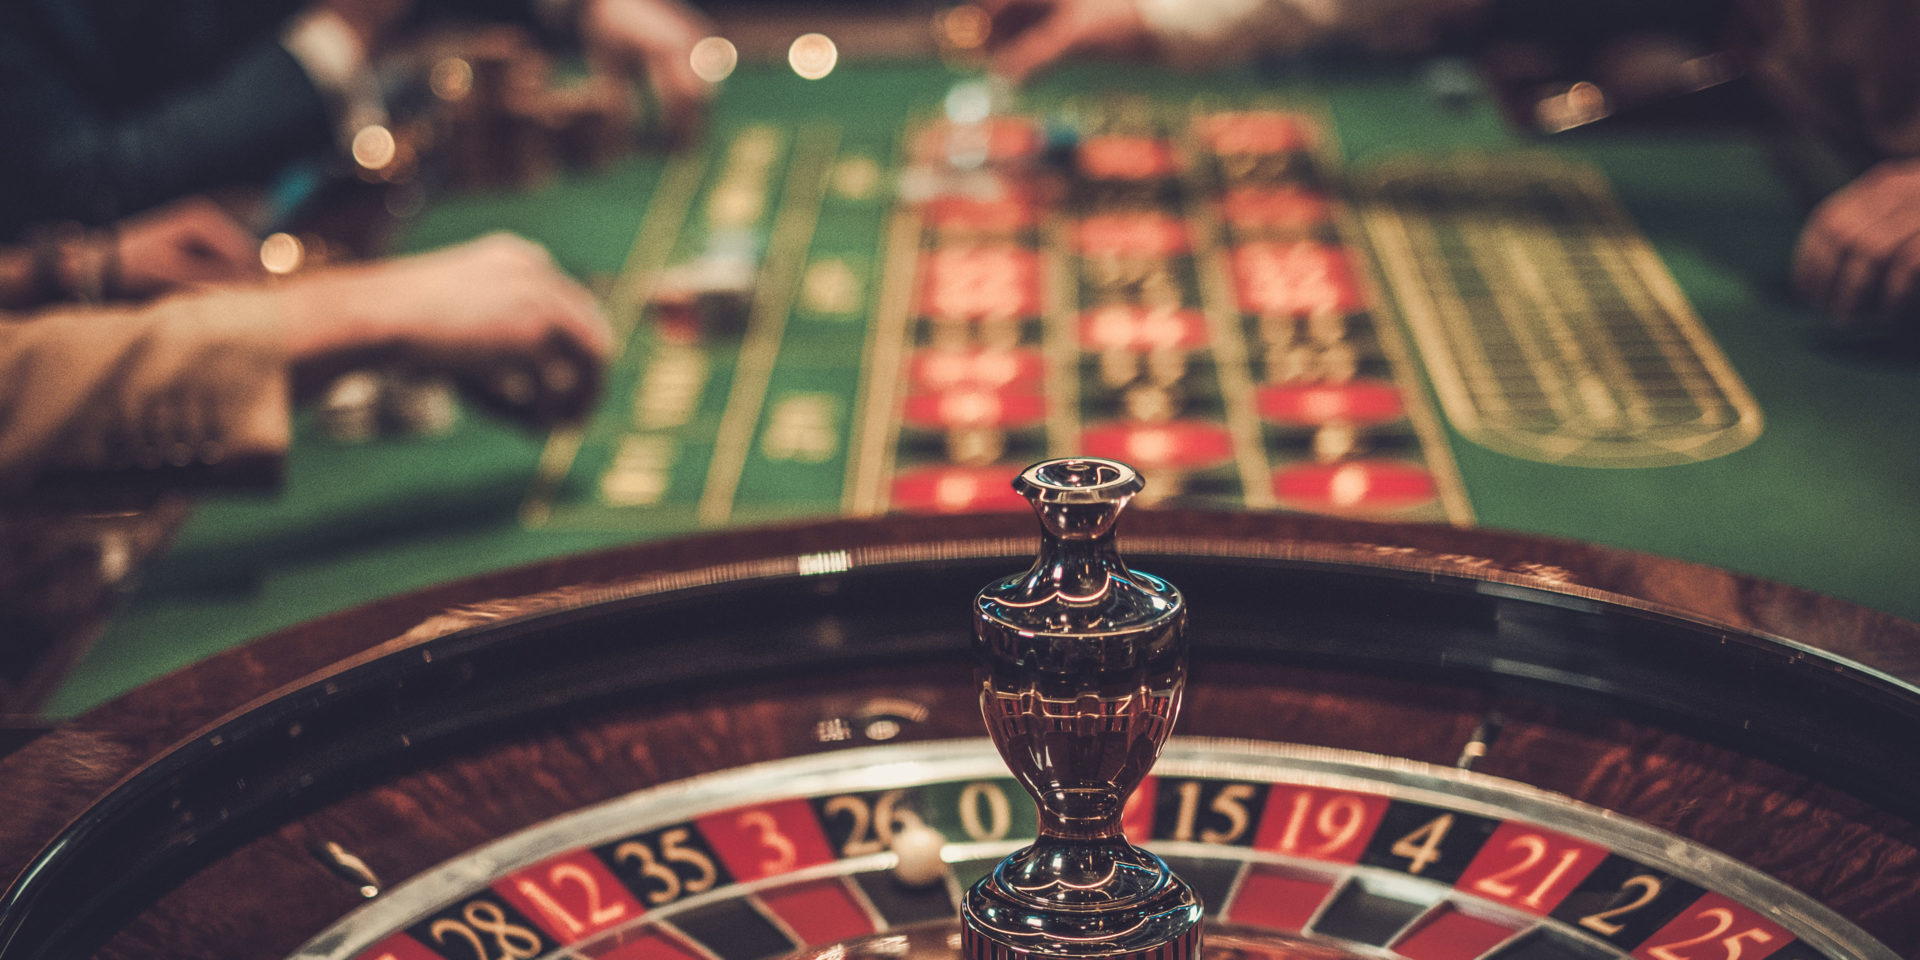 Roulette Table Games Casino Surveillance